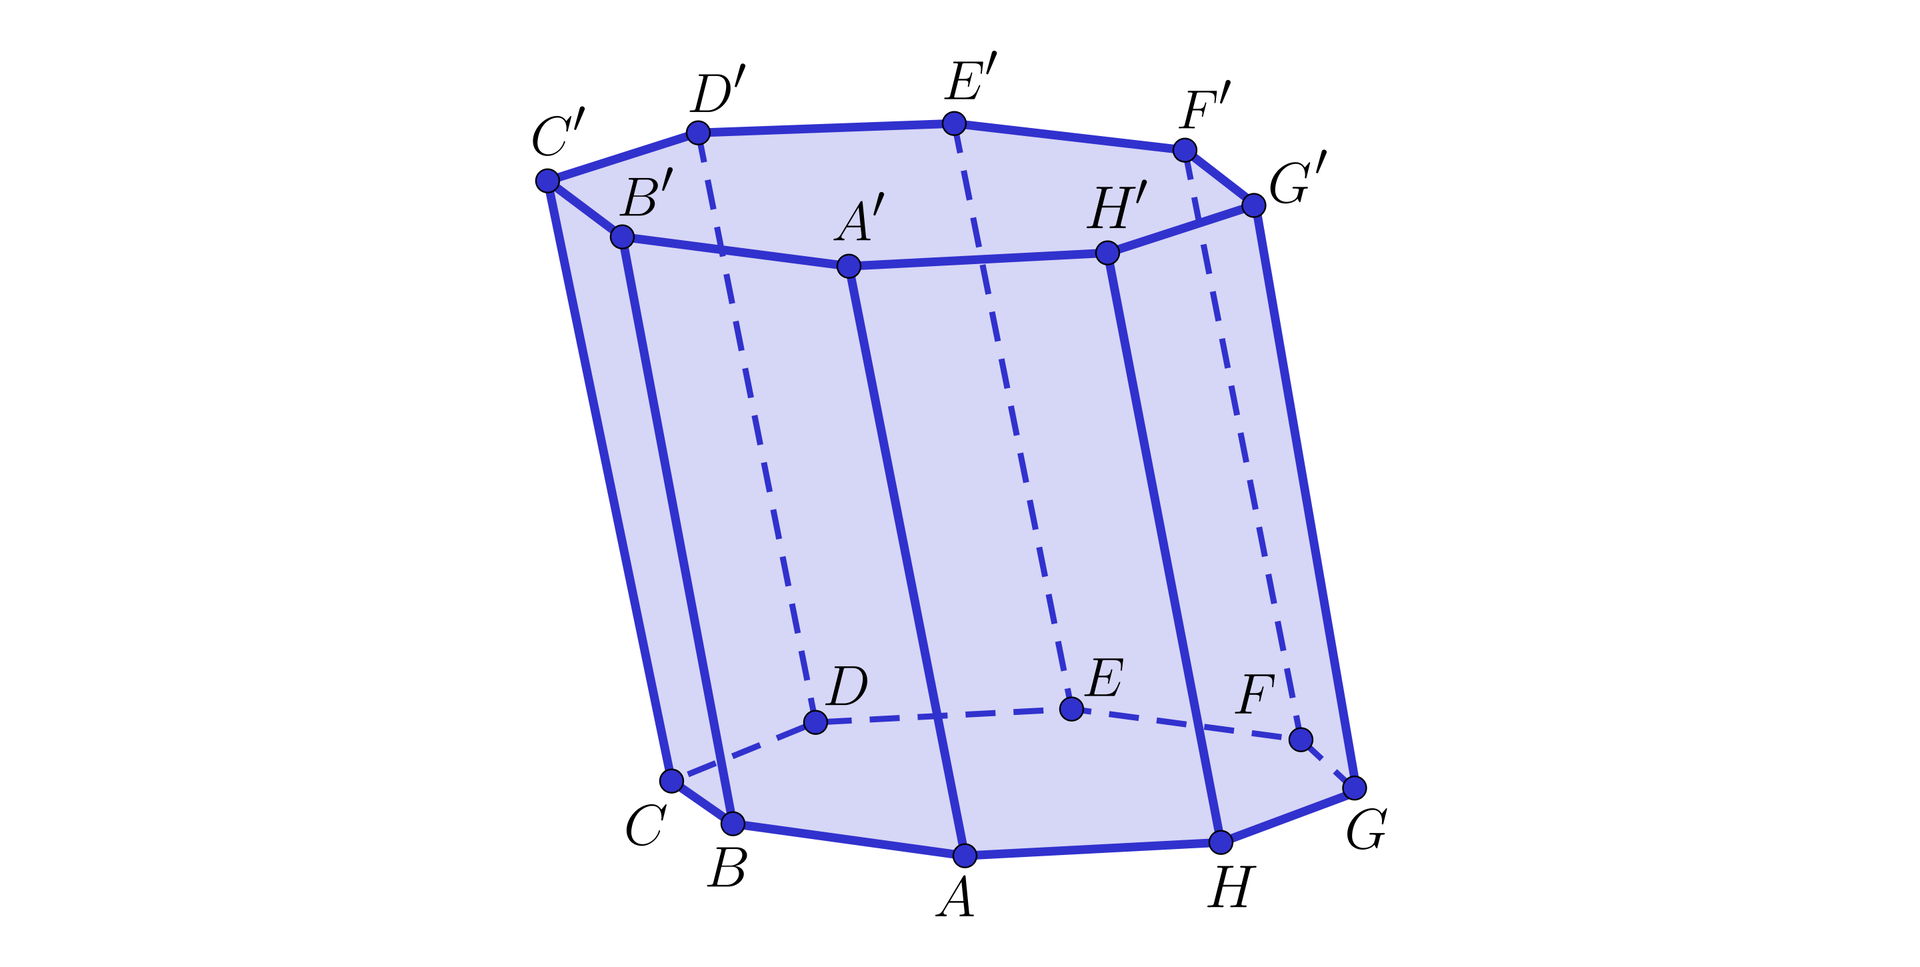 Ilustracja przedstawia graniastosłup pochylony o podstawie ośmiokąta. Wierzchołki dolnej podstawy to: A B C D E F H G. Wierzchołki górnej podstawy to: A' B' C' D' E' F' G' H'.